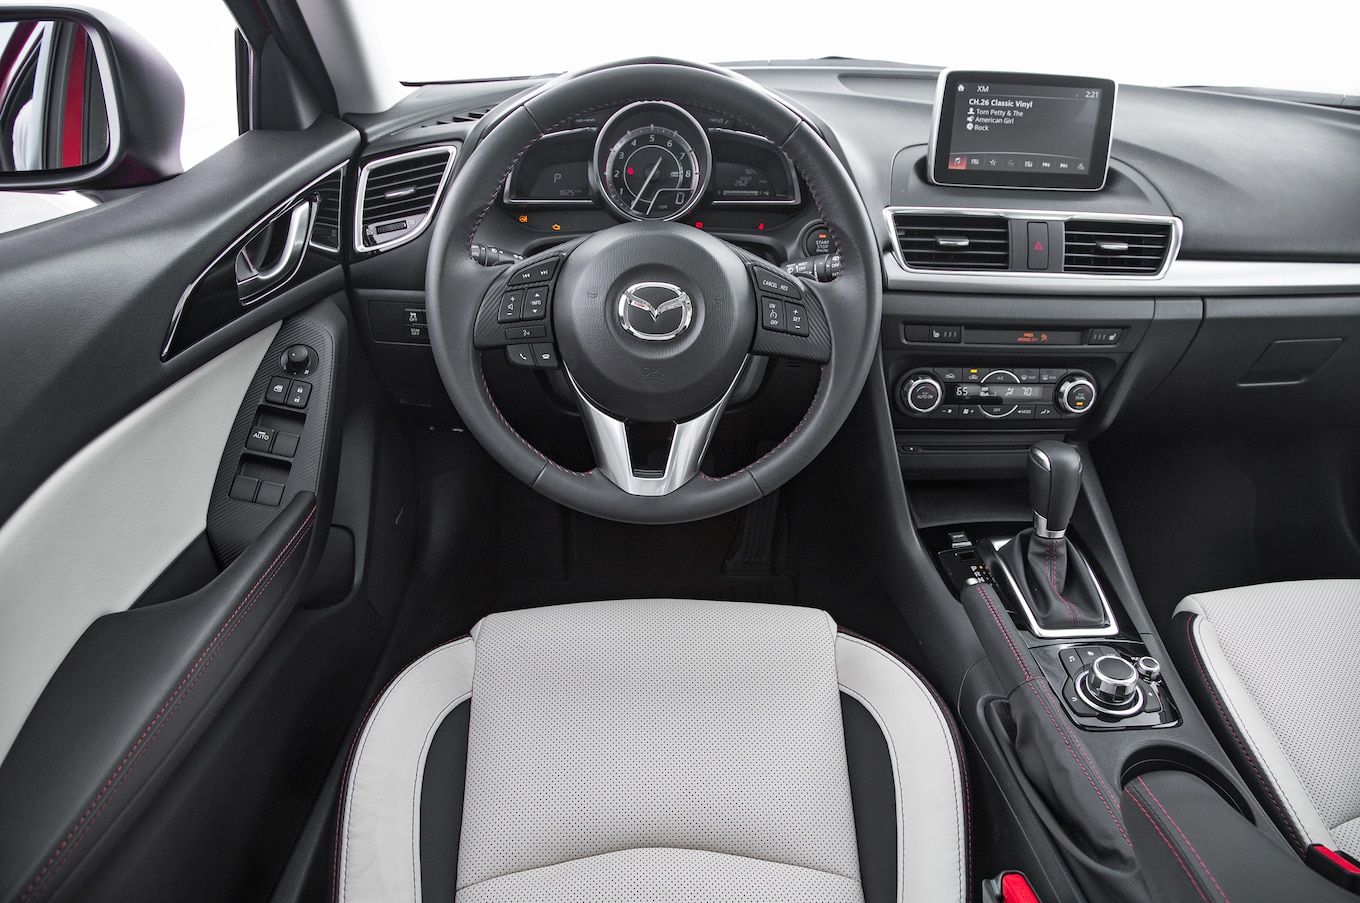 2014-Mazda3-hatchback-cockpit.jpg